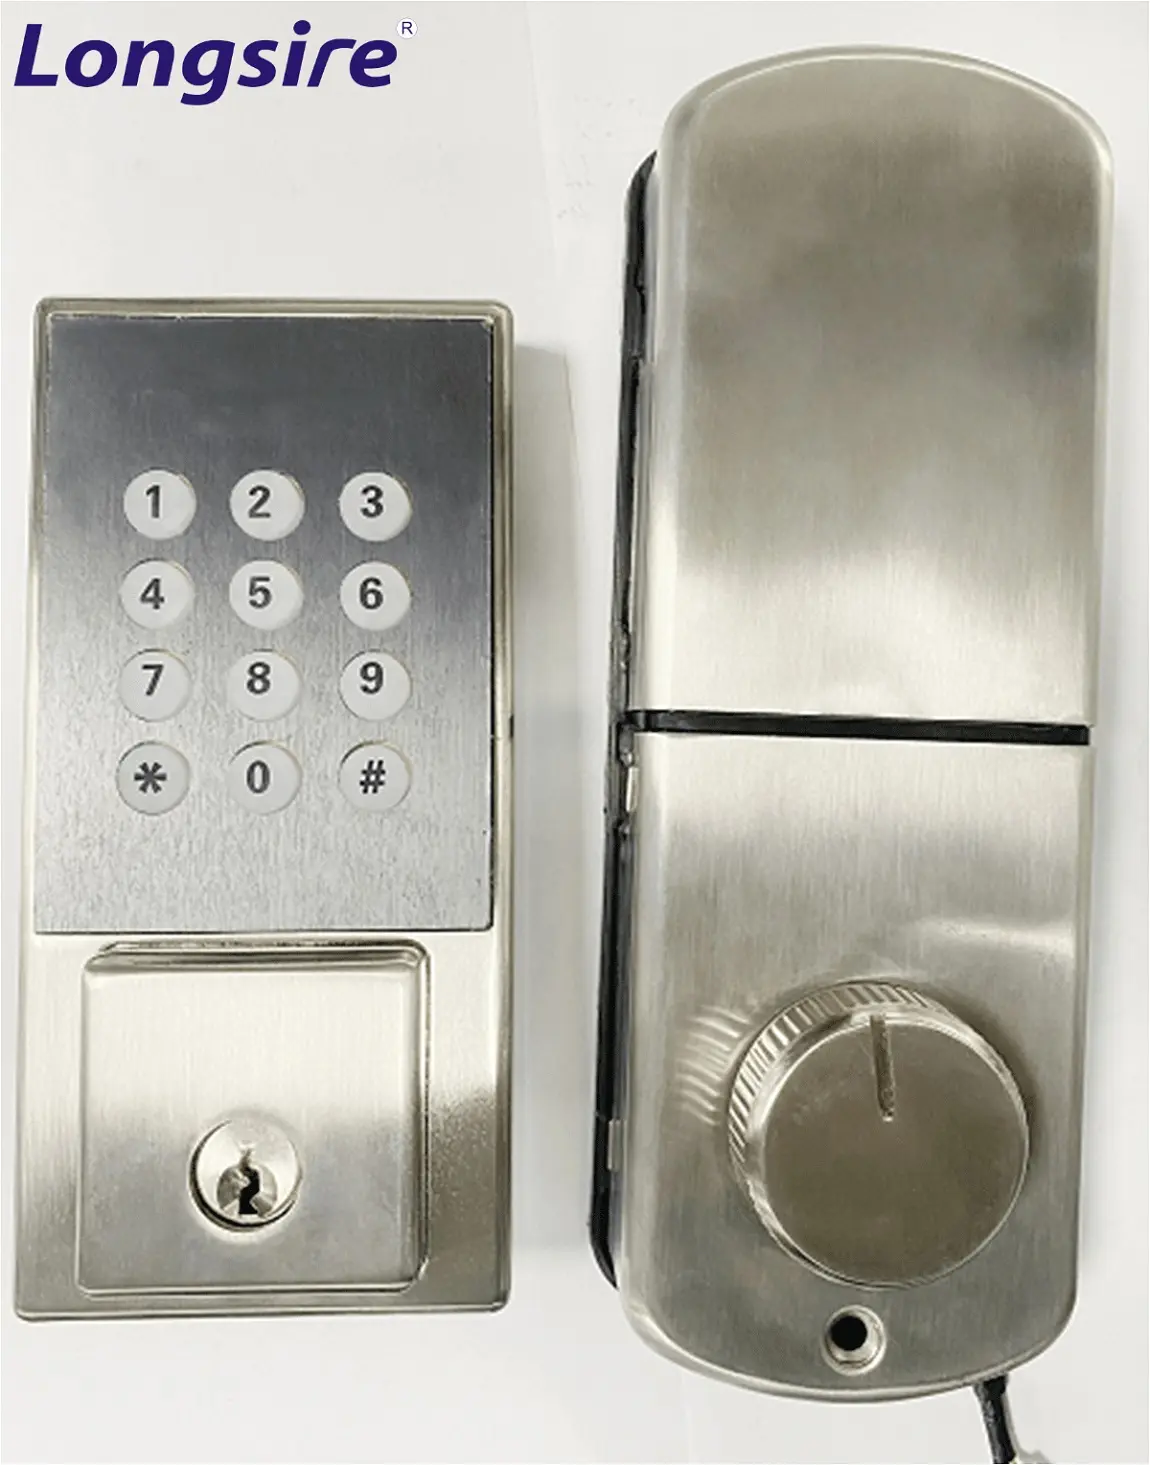 الإسكان الأجهزة الإلكترونية قفل بكلمة مرور ل الداخلية أعلى جودة سبائك الزنك الأسود غطاء قفل معدني